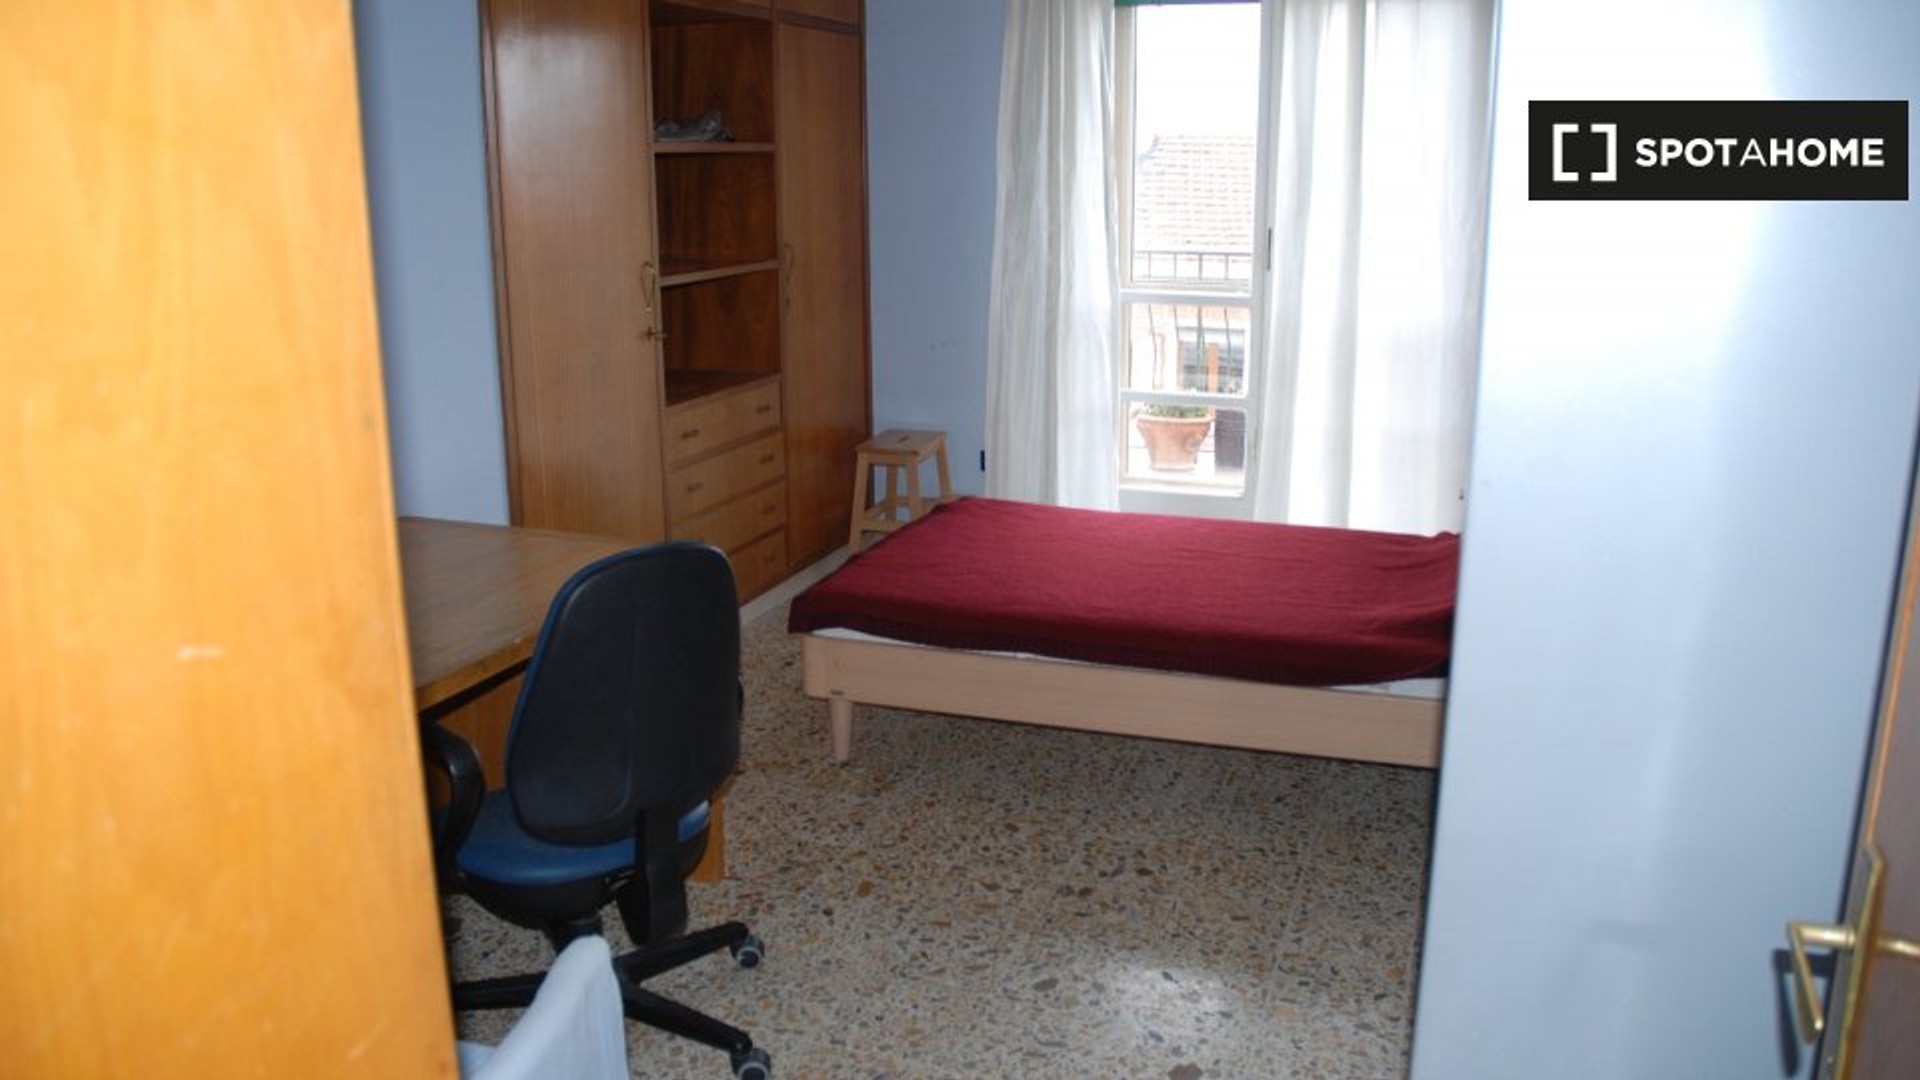 Pokój do wynajęcia z podwójnym łóżkiem w Perugia